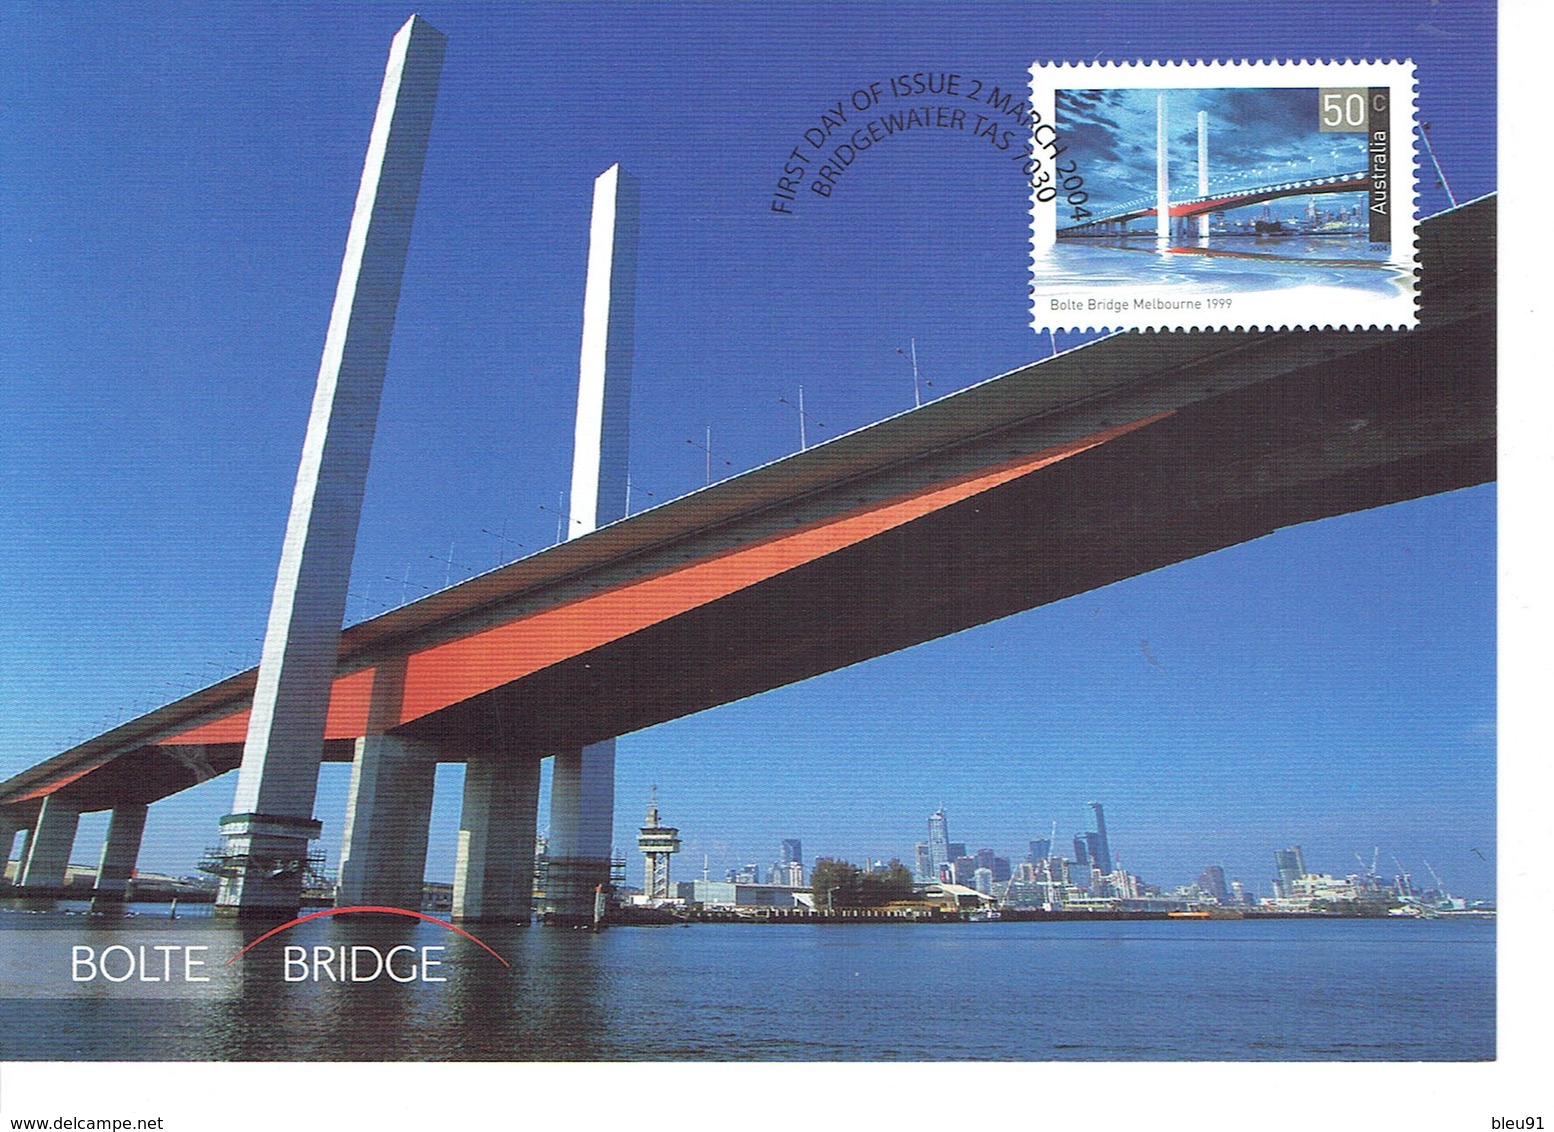 CARTE MAXIMUM MELBOURNE BOLTE BRIDGE - Maximum Cards